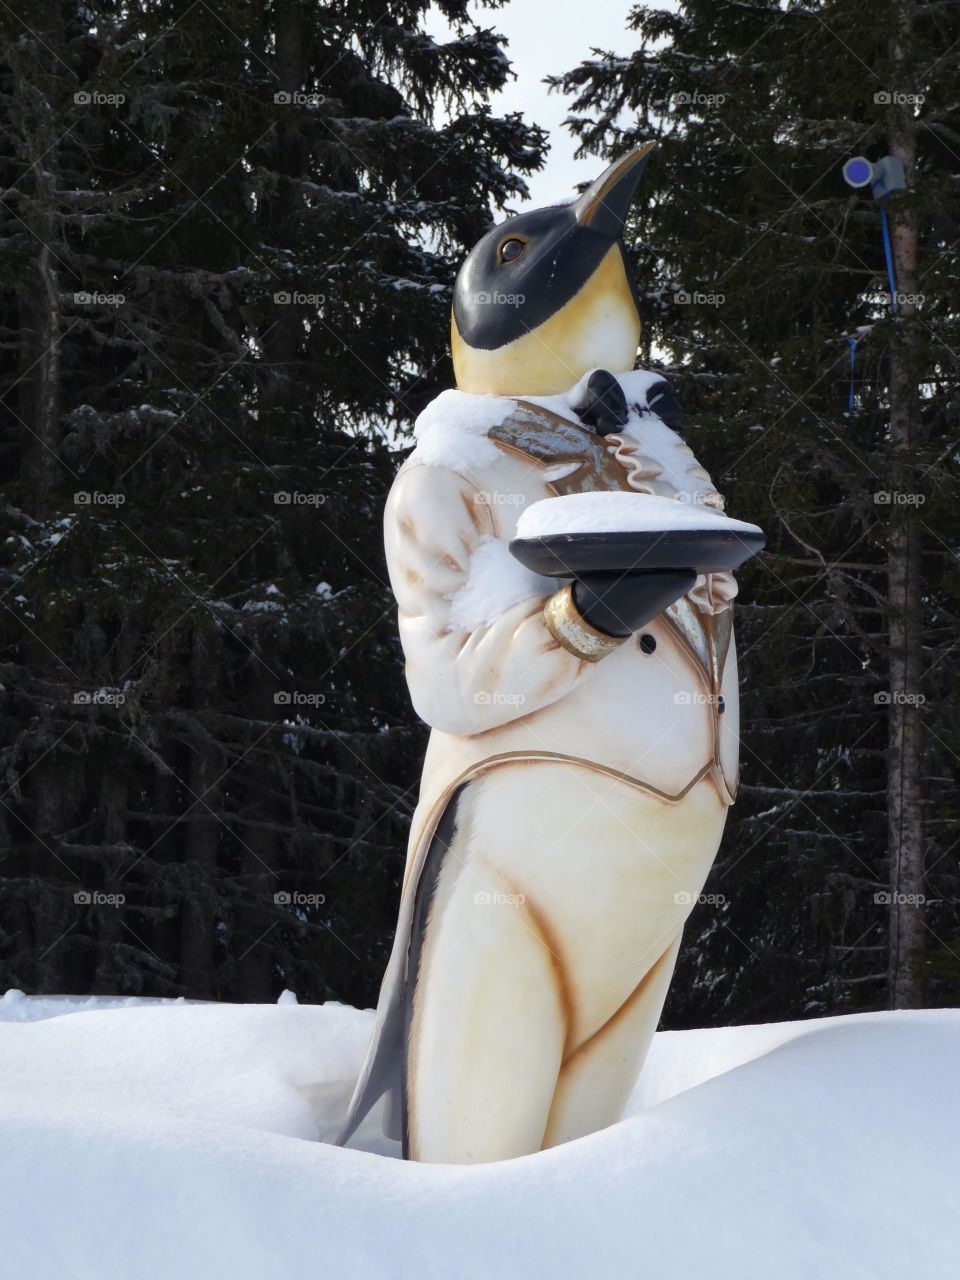 Huge penguin in the snow